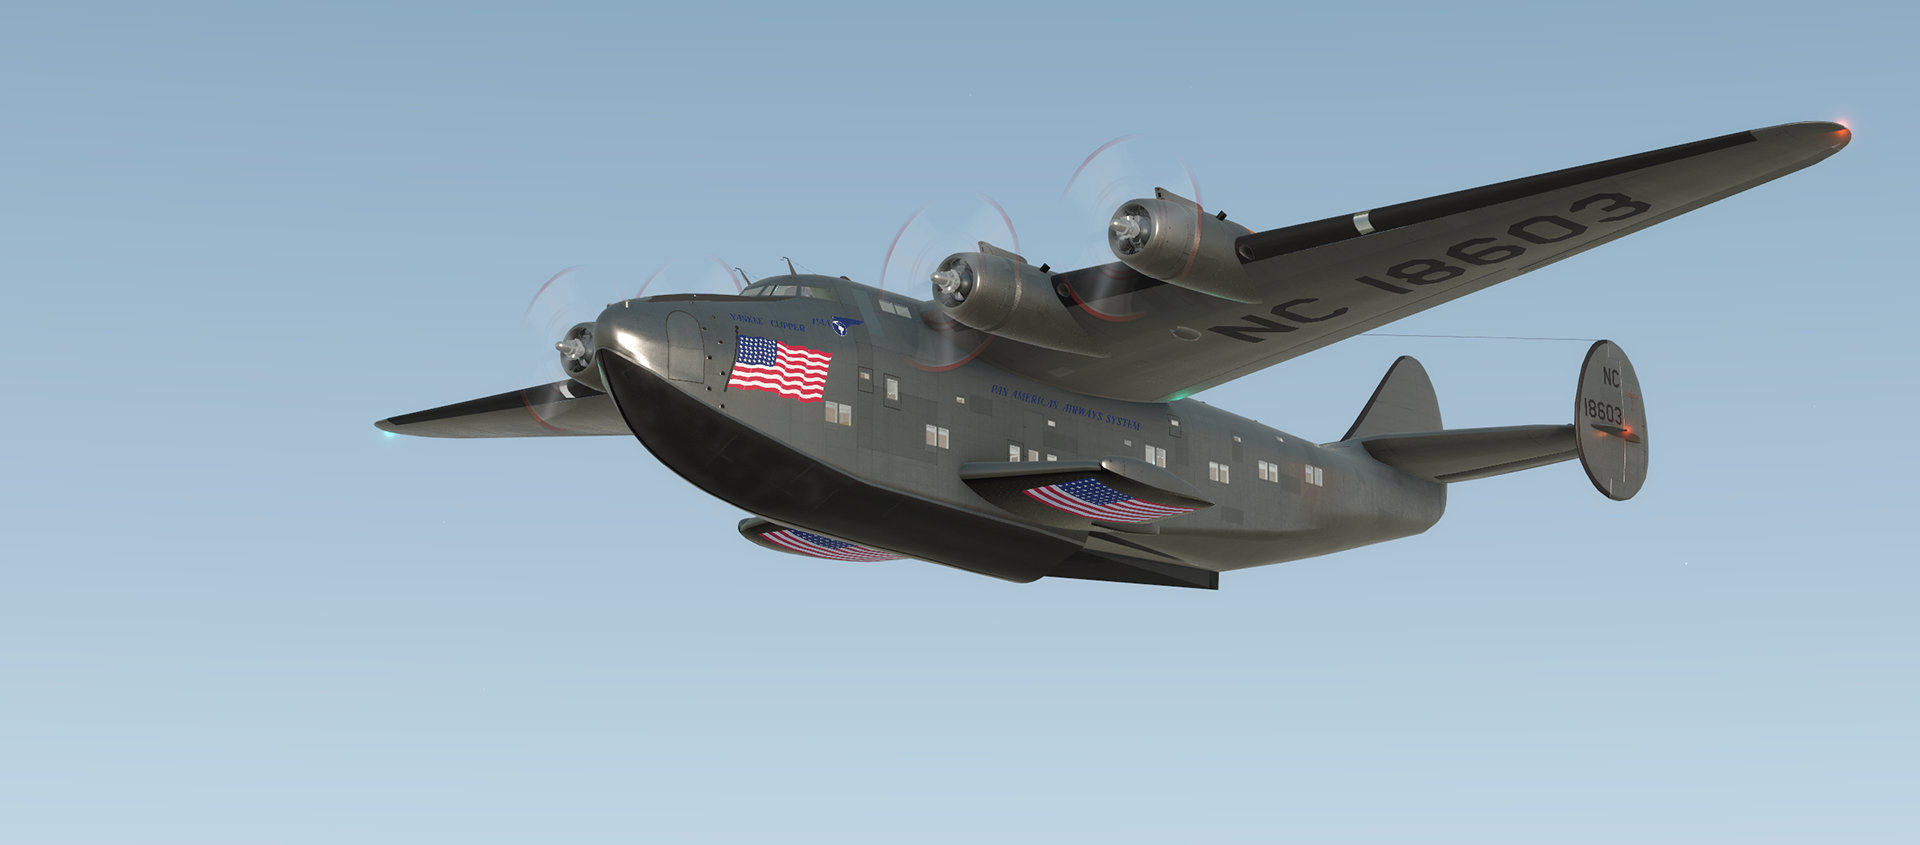 Fliegendes Boot: Boeing 314 von PILOT'S kommt im Sommer!